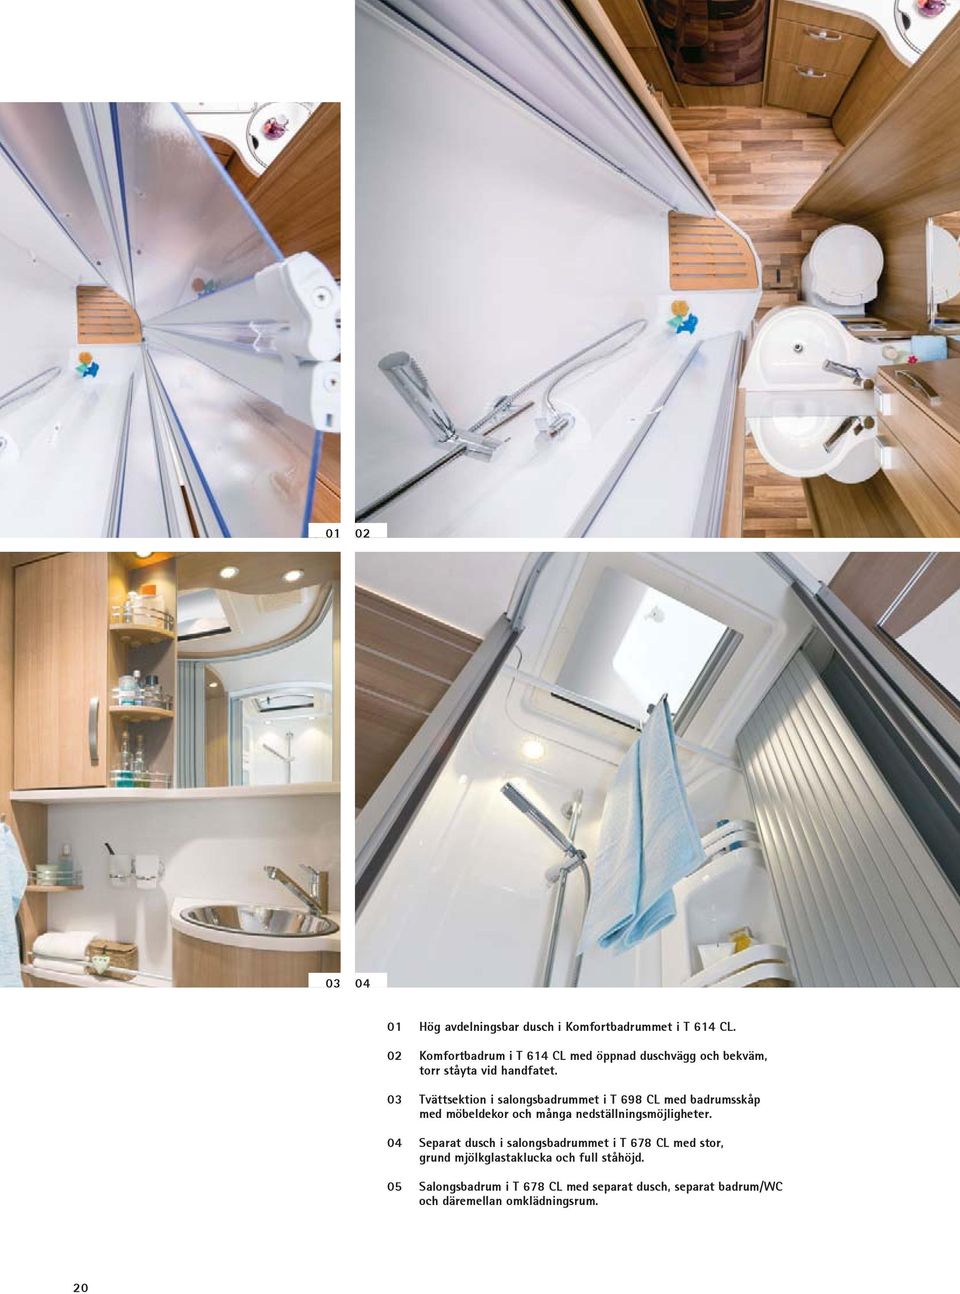 03 Tvättsektion i salongsbadrummet i T 698 CL med badrumsskåp med möbeldekor och många nedställningsmöjligheter.